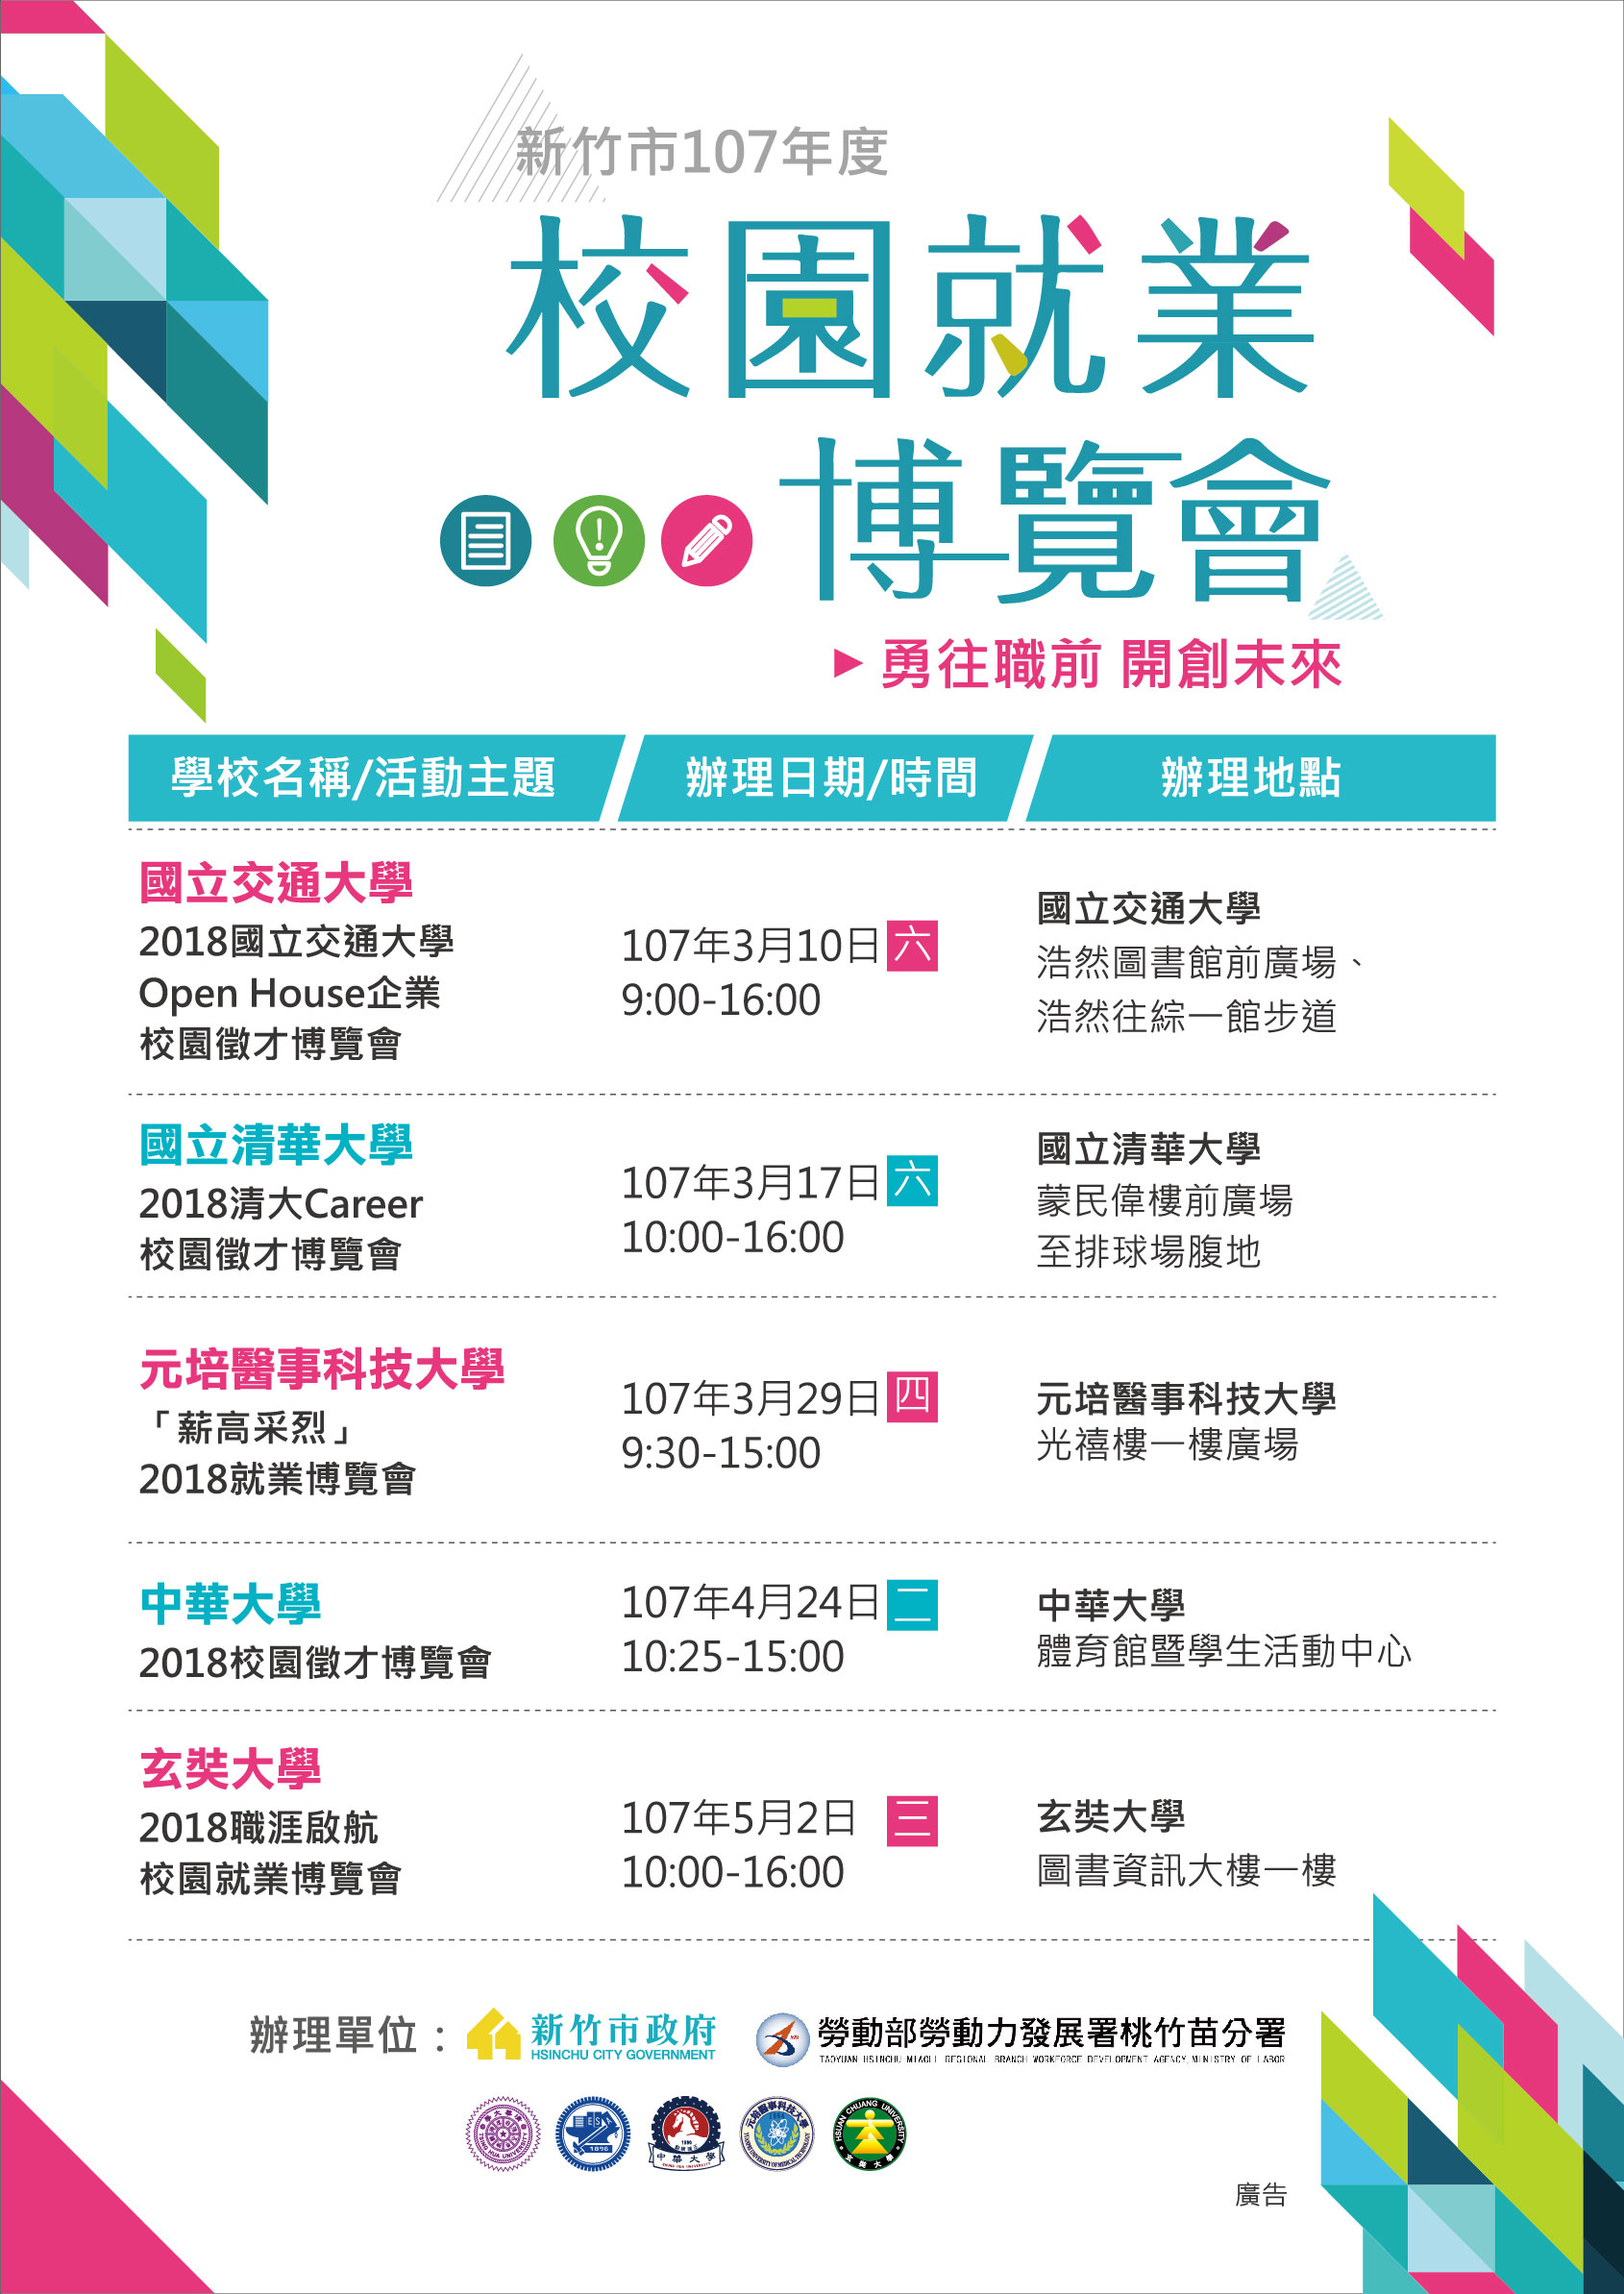 新竹市5所大學就業博覽會將於107年3月10日、3月17日、3月29日、4月24日及5月2日辦理。|